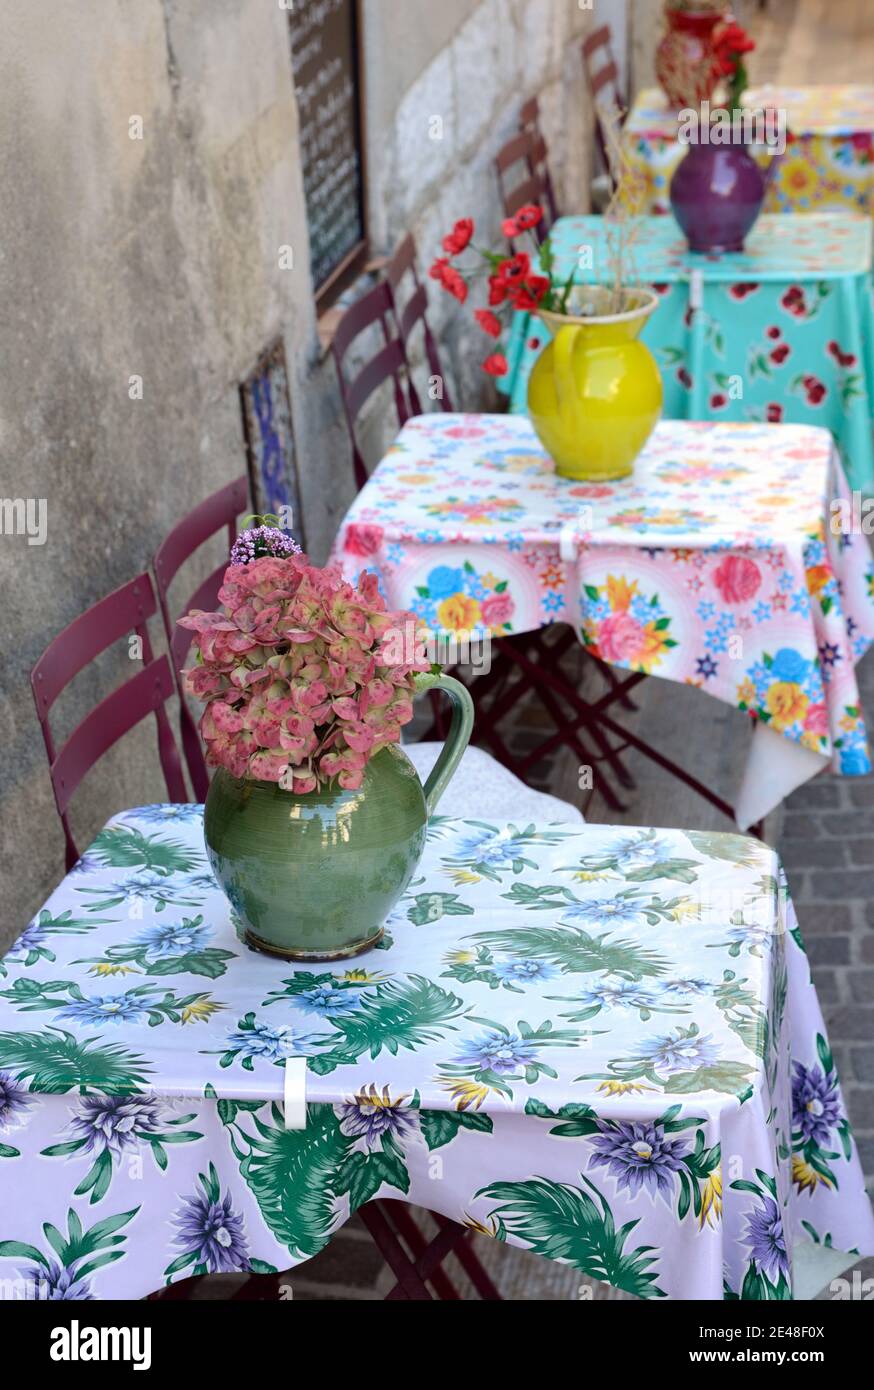 Restaurant im Freien mit Tischen mit Provençal Tischdecken Decorative Krug vorbereitet Vasen & Blumen in Cassis Provence Frankreich Stockfoto